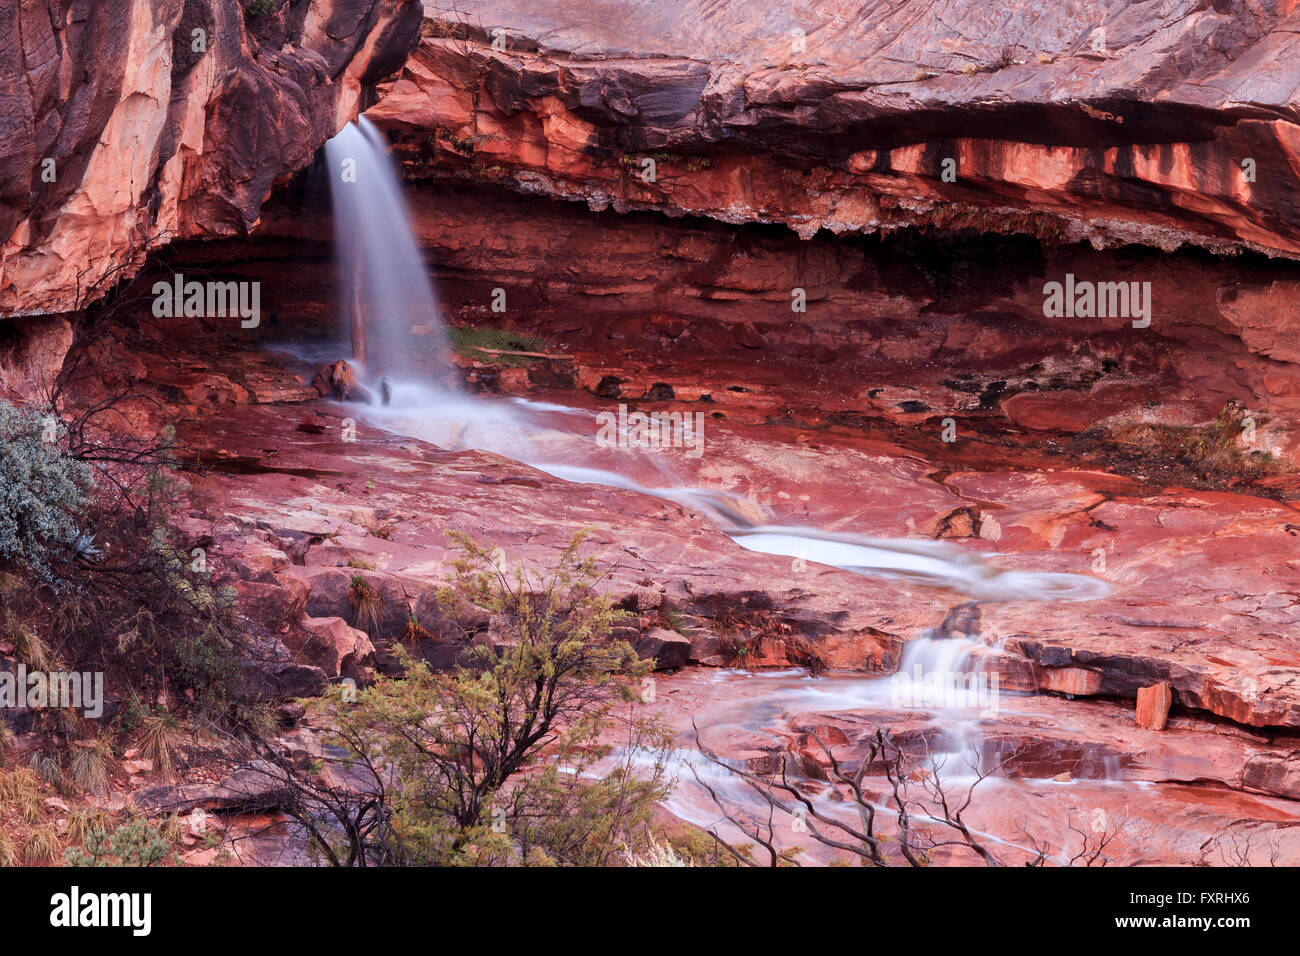 banner Catena arv Waterfall in Red Rock State Park, Sedona, Arizona Stock Photo - Alamy